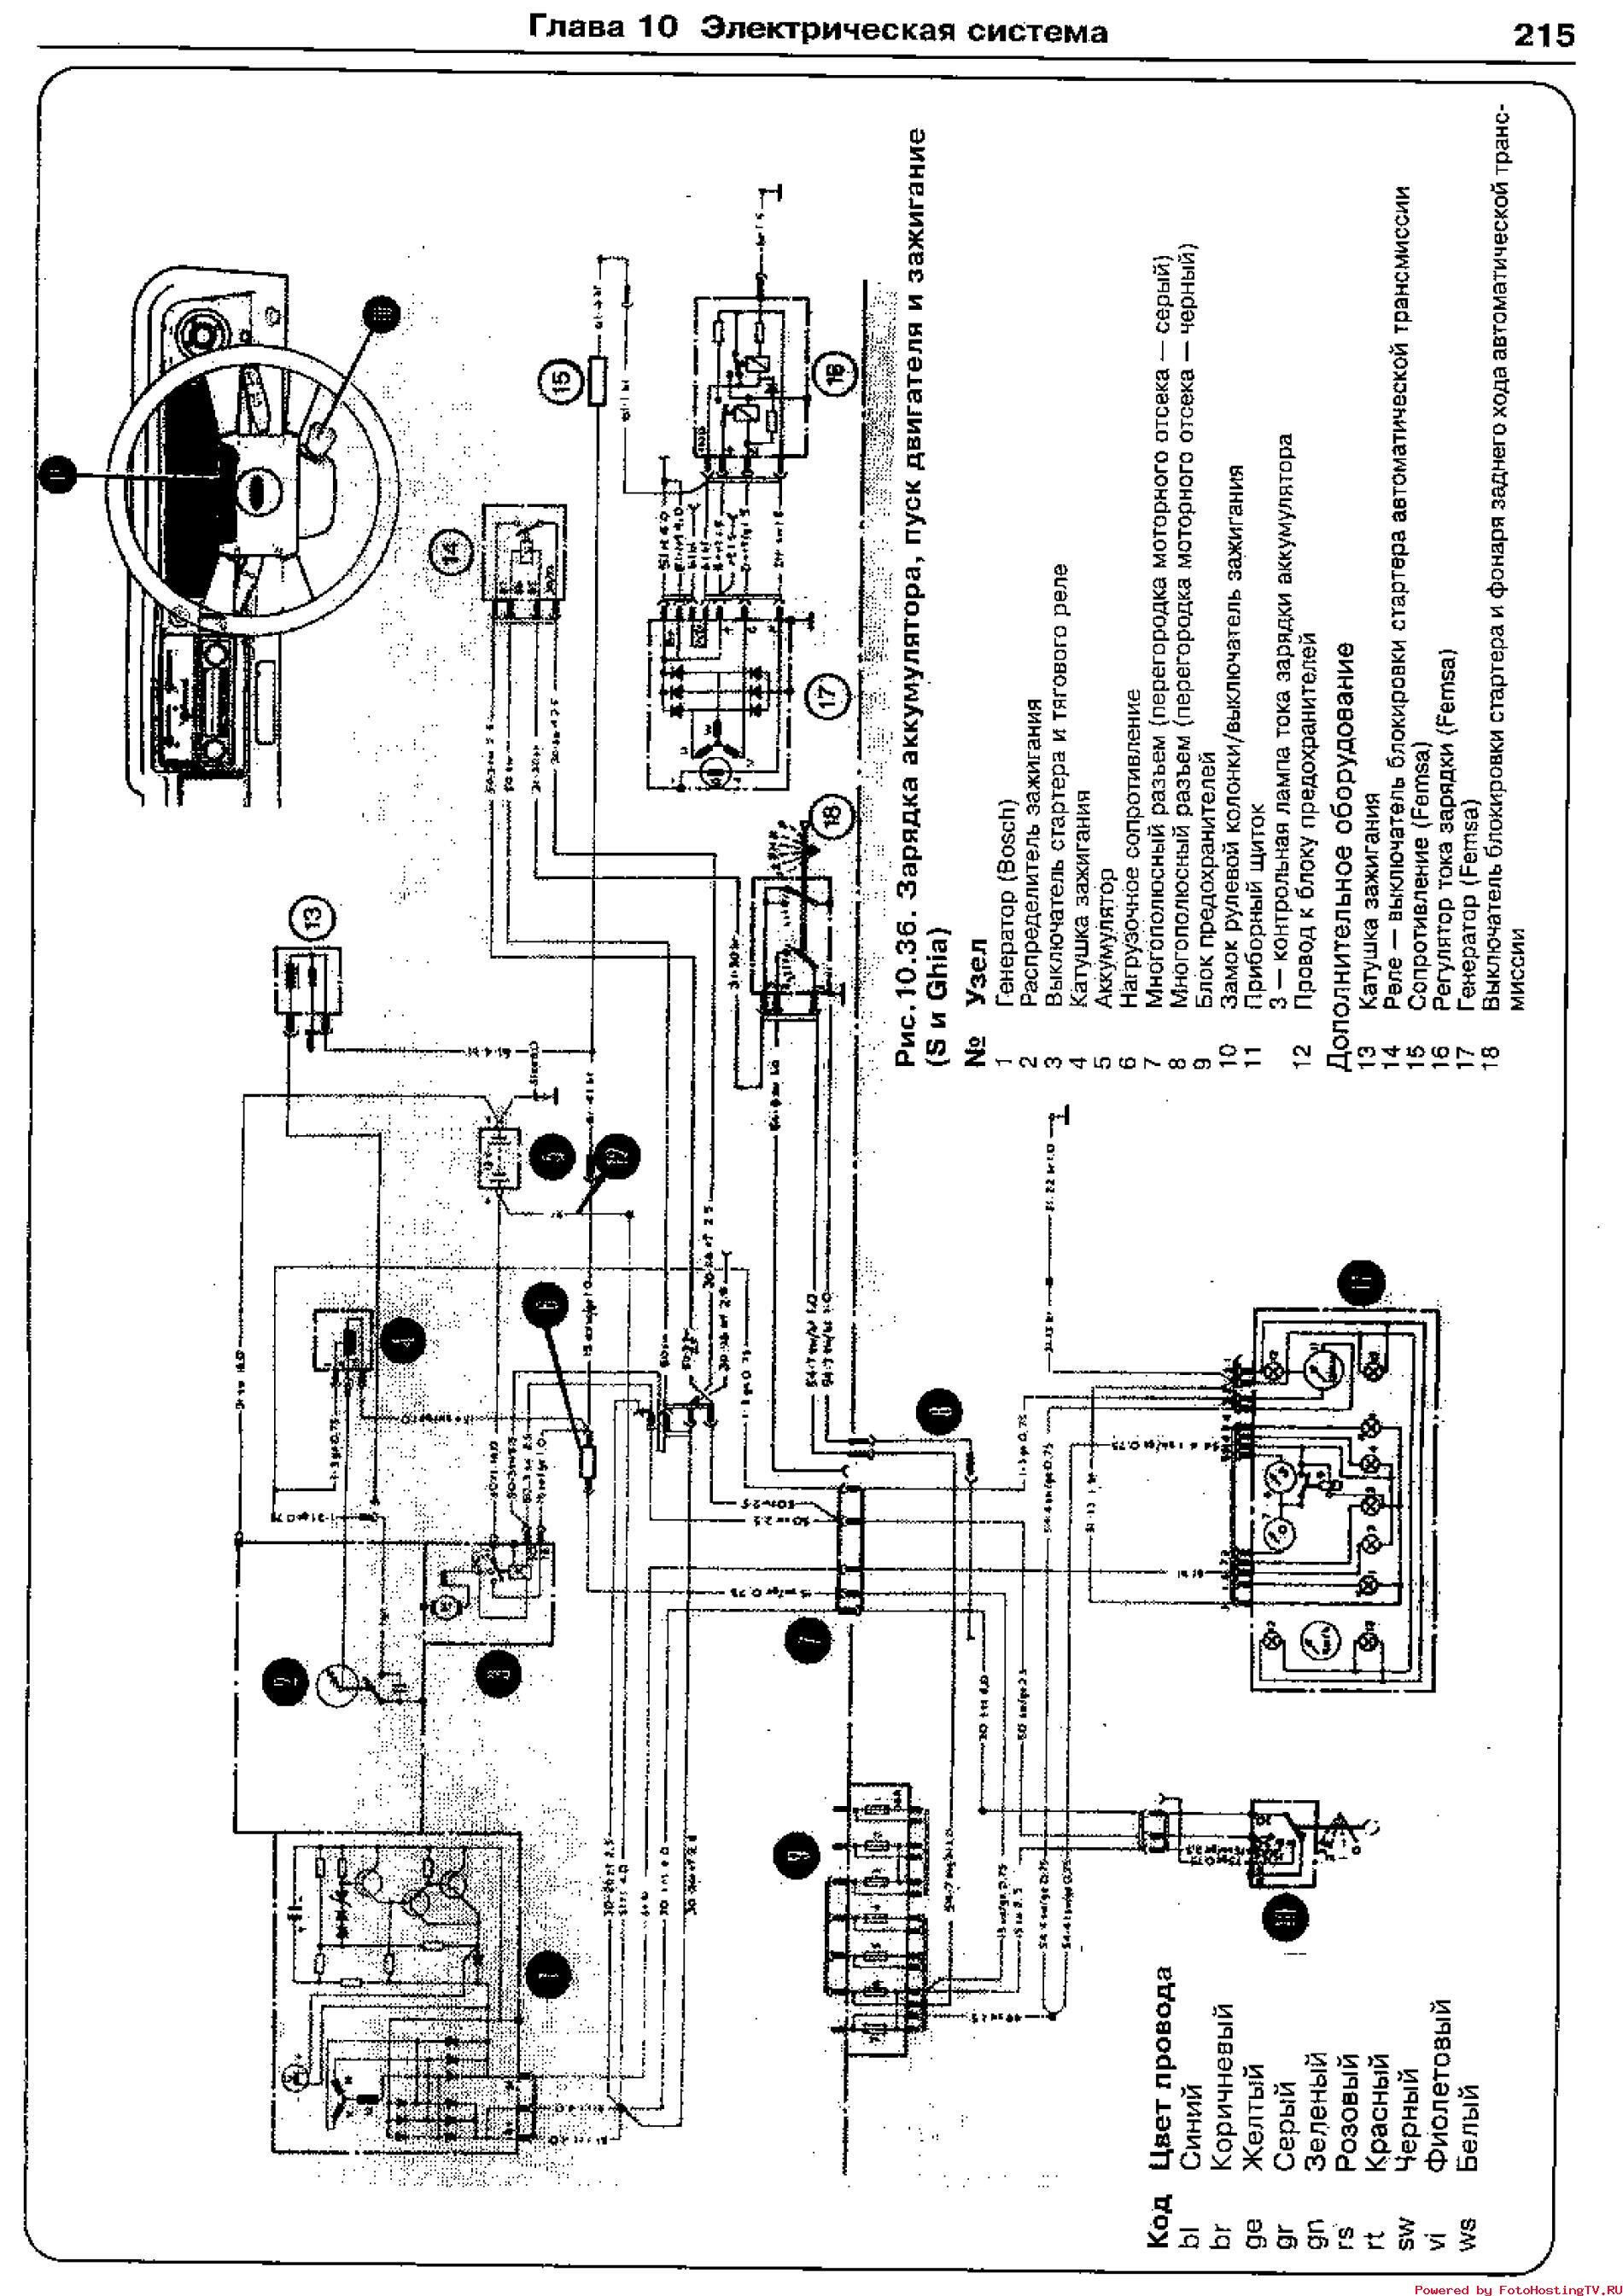 Система питания дизеля Д-245Е3